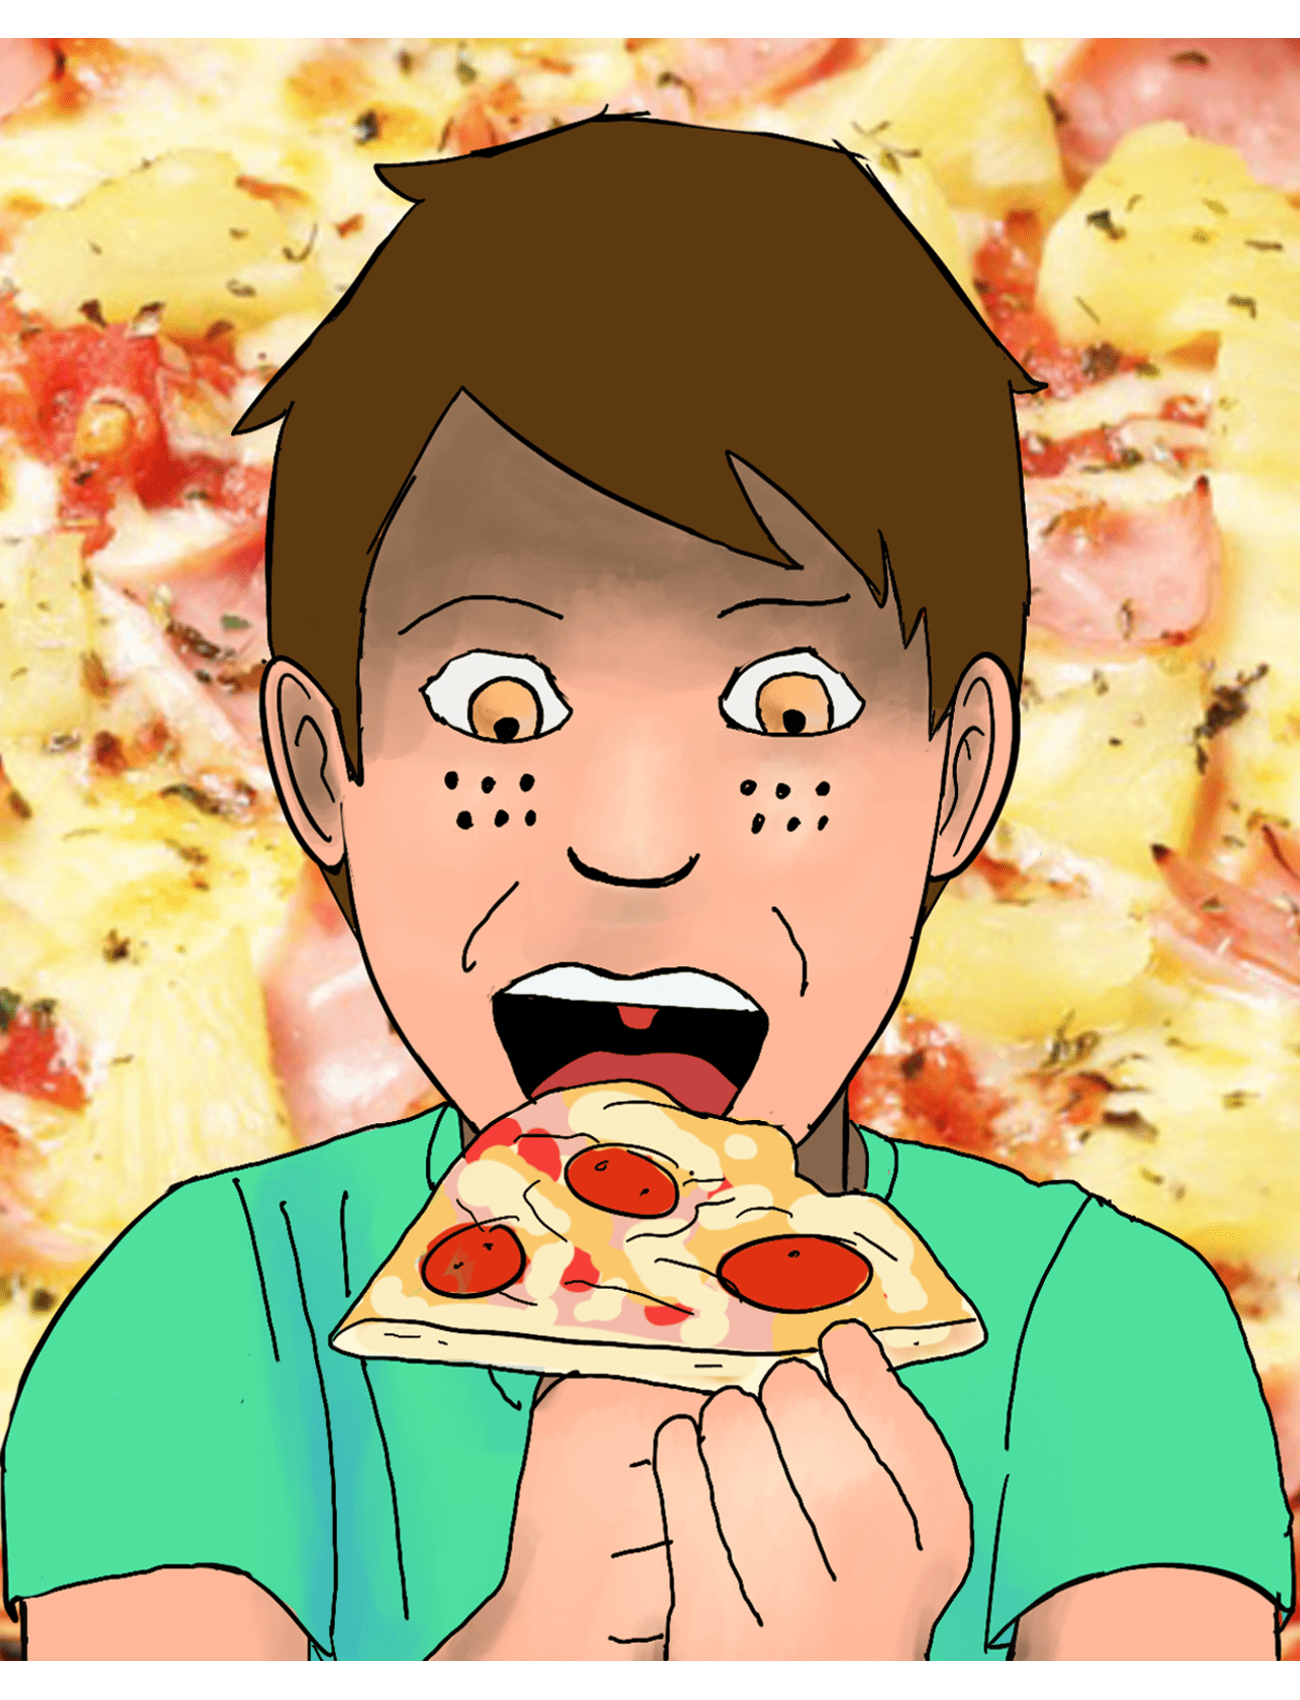 Me encantan las pizzas.